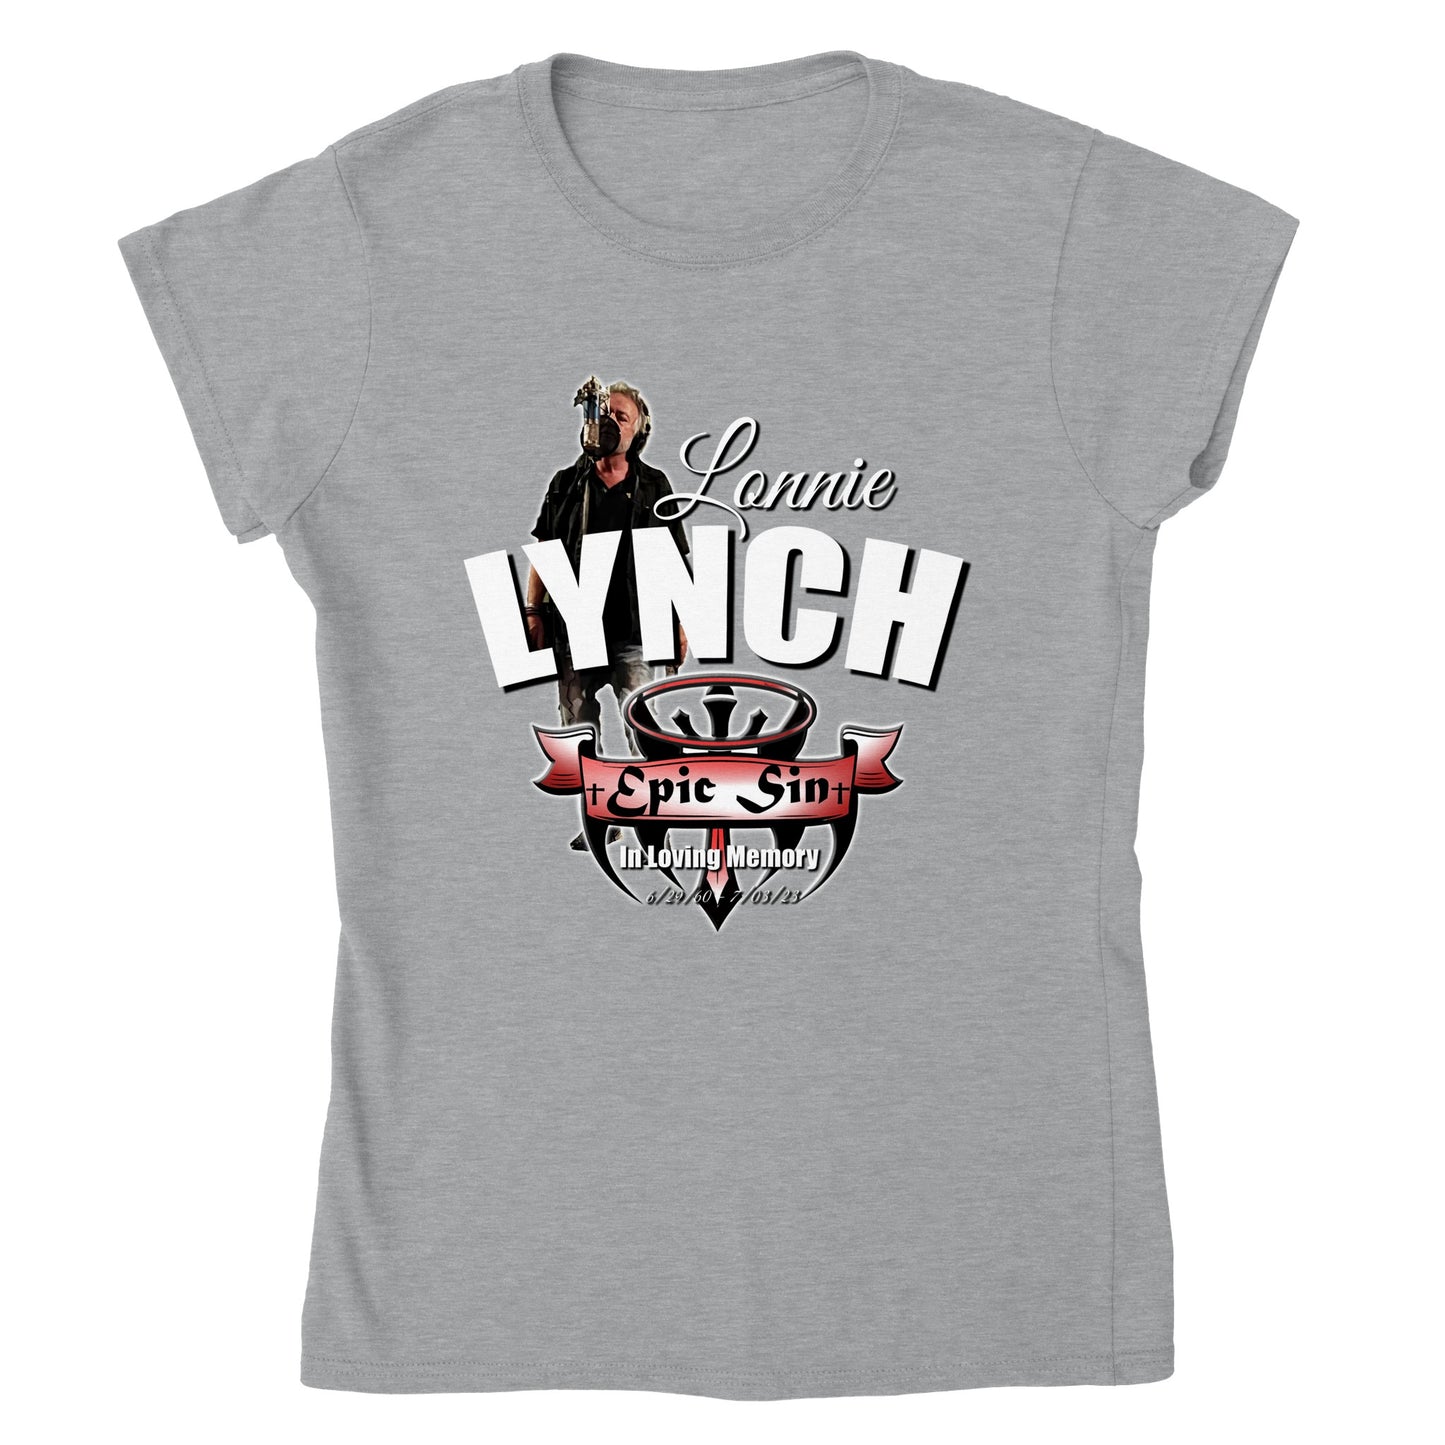 Lonnie Lynich (Epic Sin) Classic Womens Crewneck T-shirt